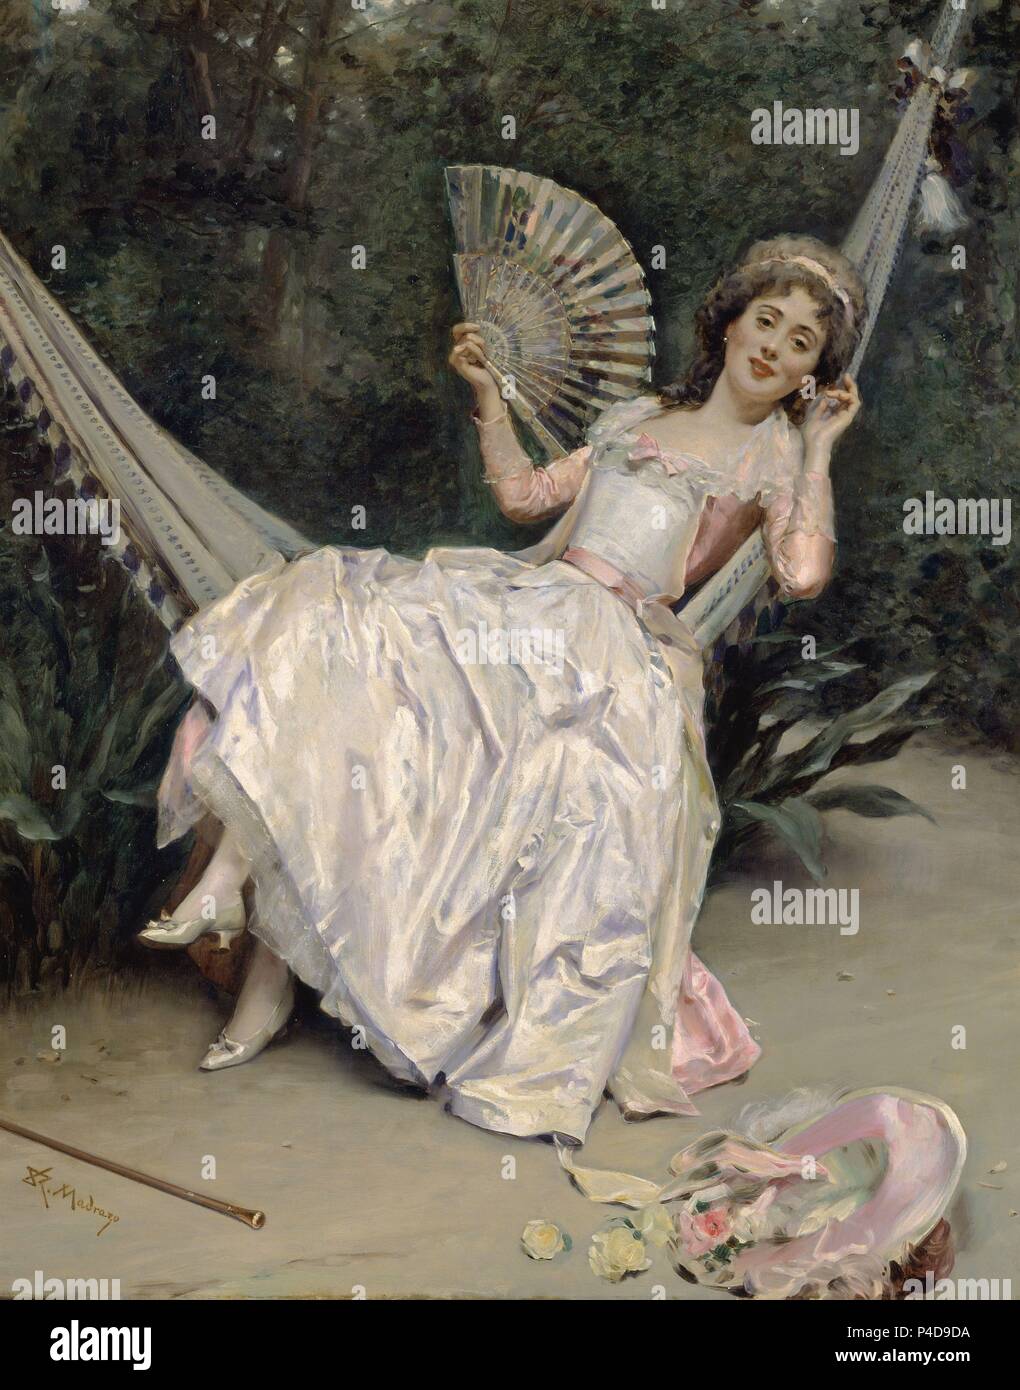 'Girl in the Hammock', 19th century, Oil on canvas, 101 x 81 cm. Author: Raimundo de Madrazo y Garreta (1841-1920). Location: MUSEO NACIONAL DE BELLAS ARTES, LA HABANA, CUBA. Stock Photo